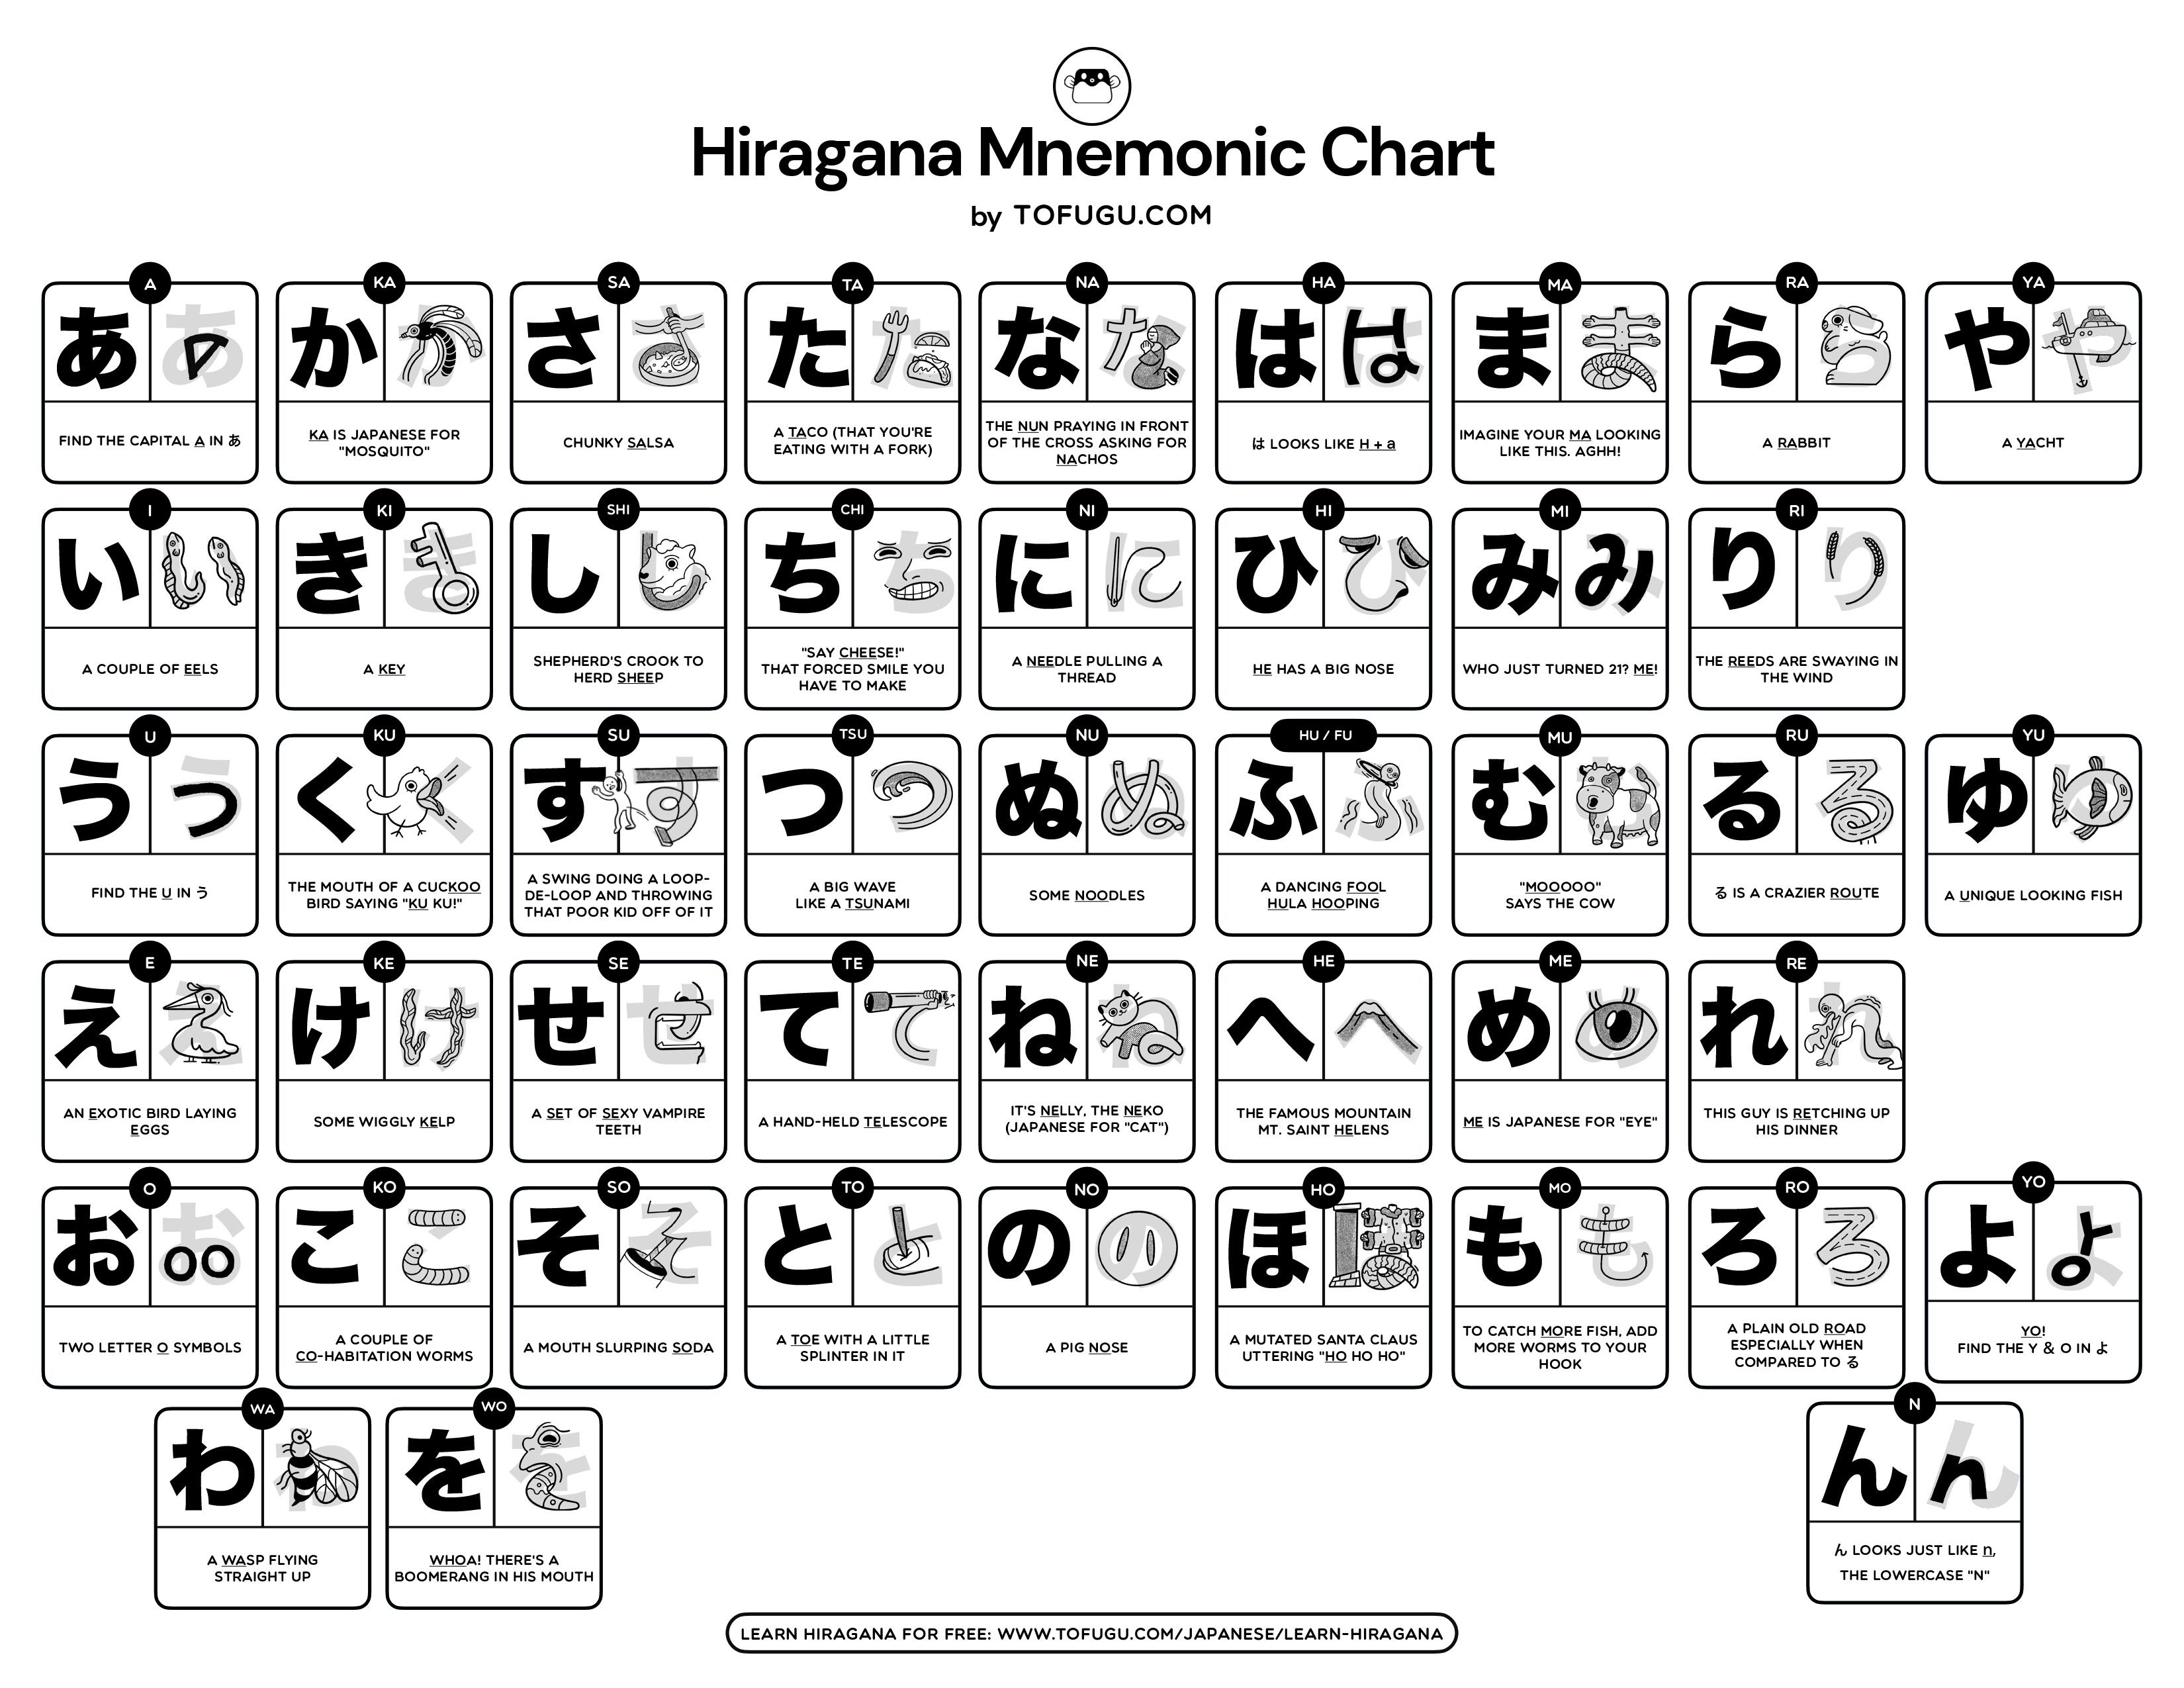 mnemonic hiragana chart